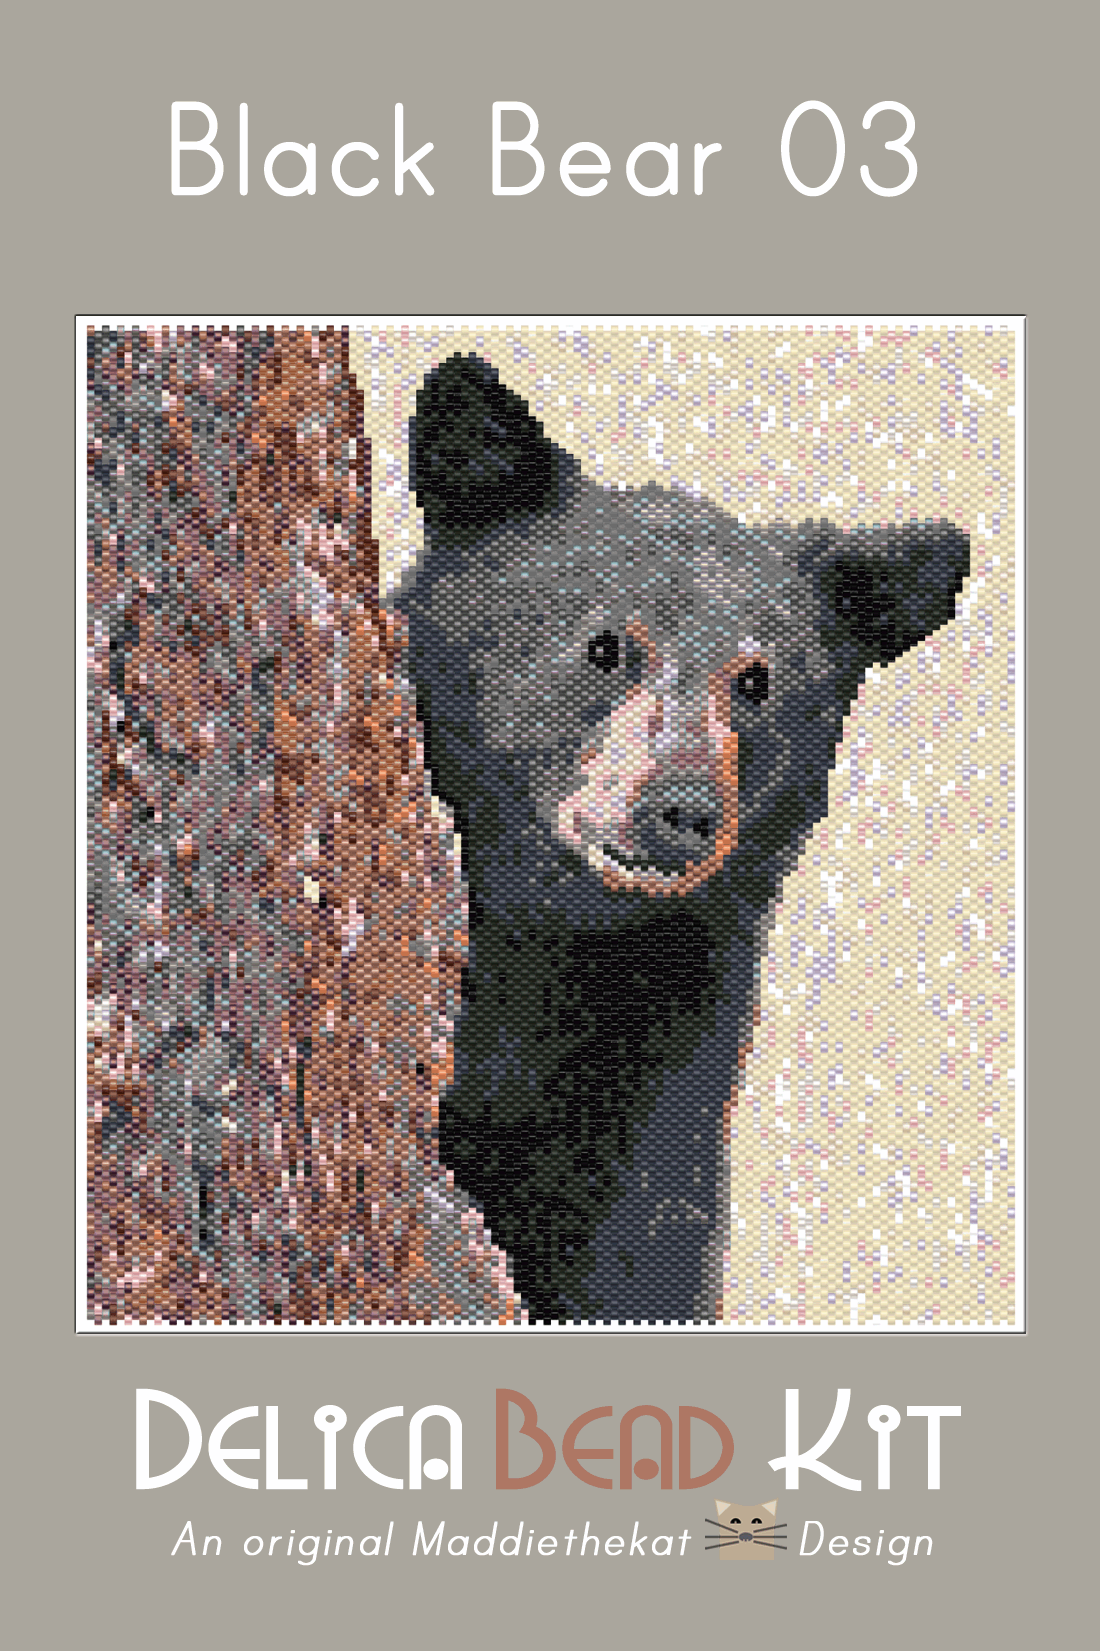 Black Bear 03 Larger Peyote Bead Pattern PDF or Bead Kit